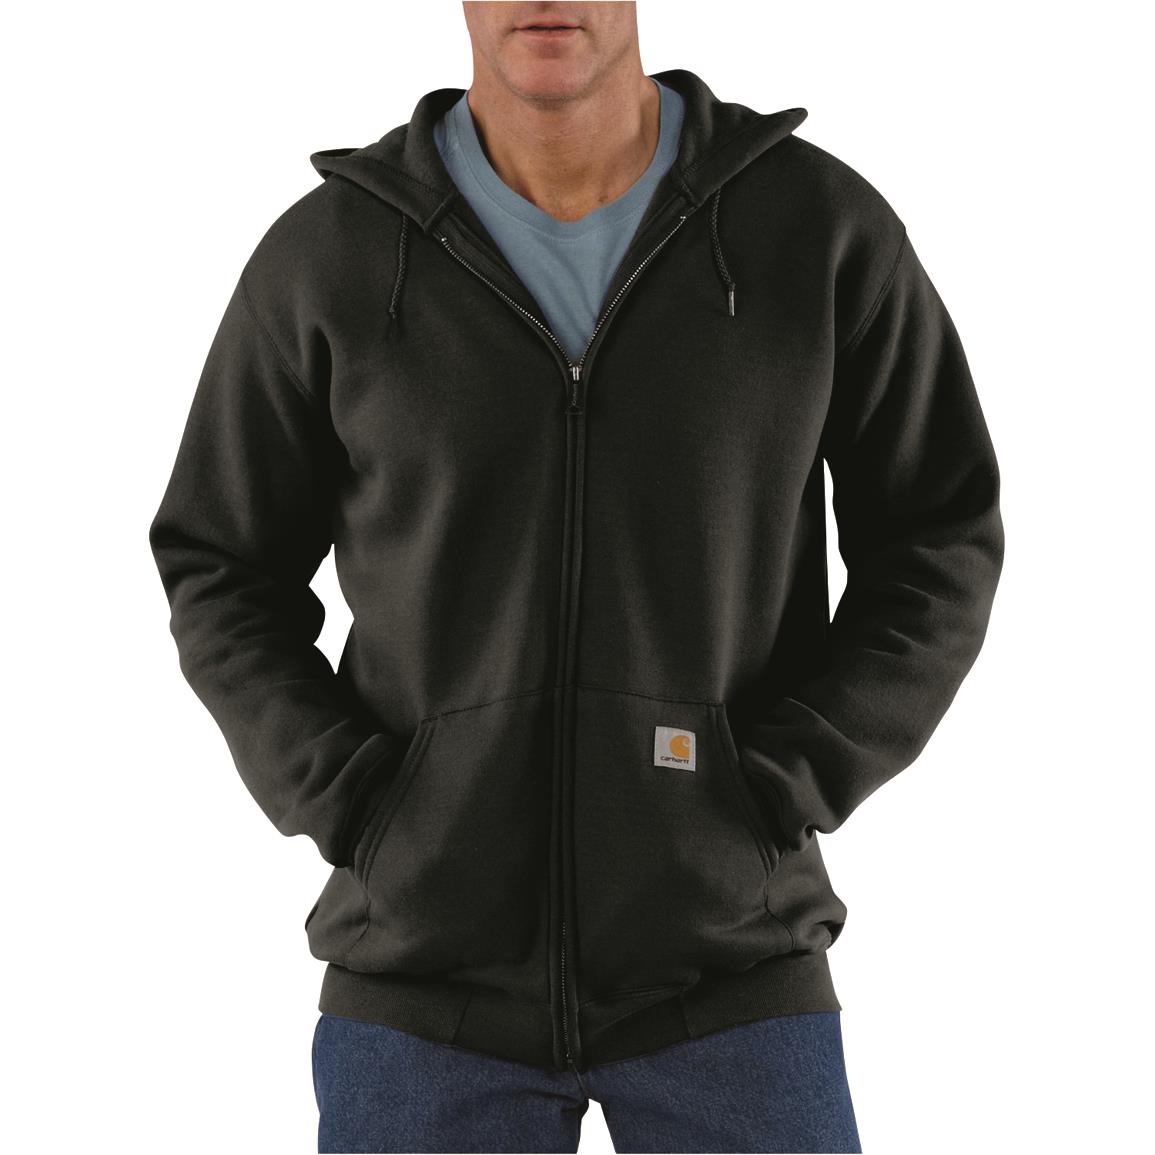 Carhartt Men's Midweight Hooded Zip Front Sweatshirt, Black